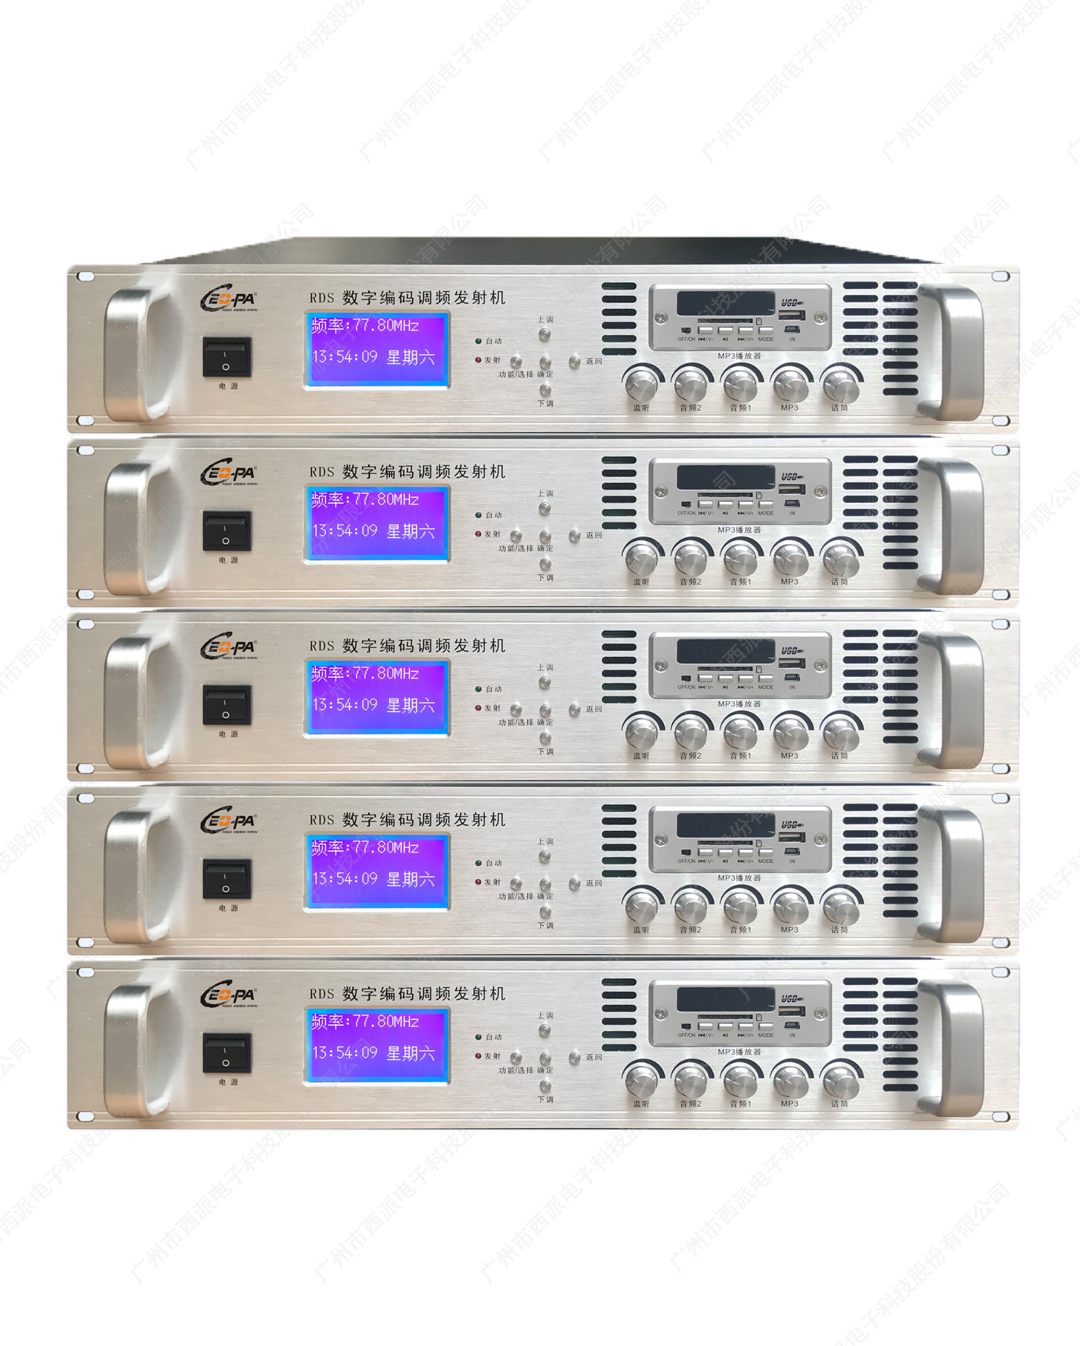 數字調頻發射數碼編碼一體主機(含軟件)30W-300W  CE-8162-CE-8167